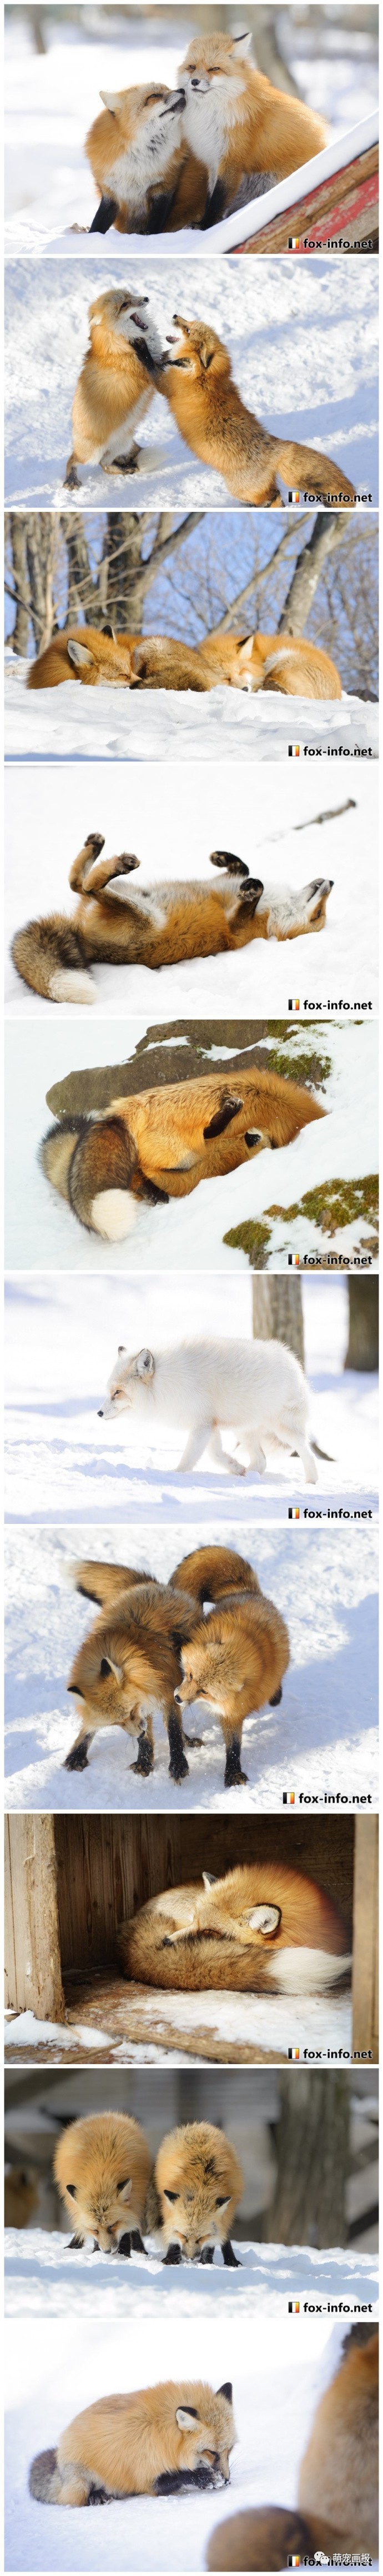 冰天雪地里的胖狐狸赤狐和雪景真的是绝配